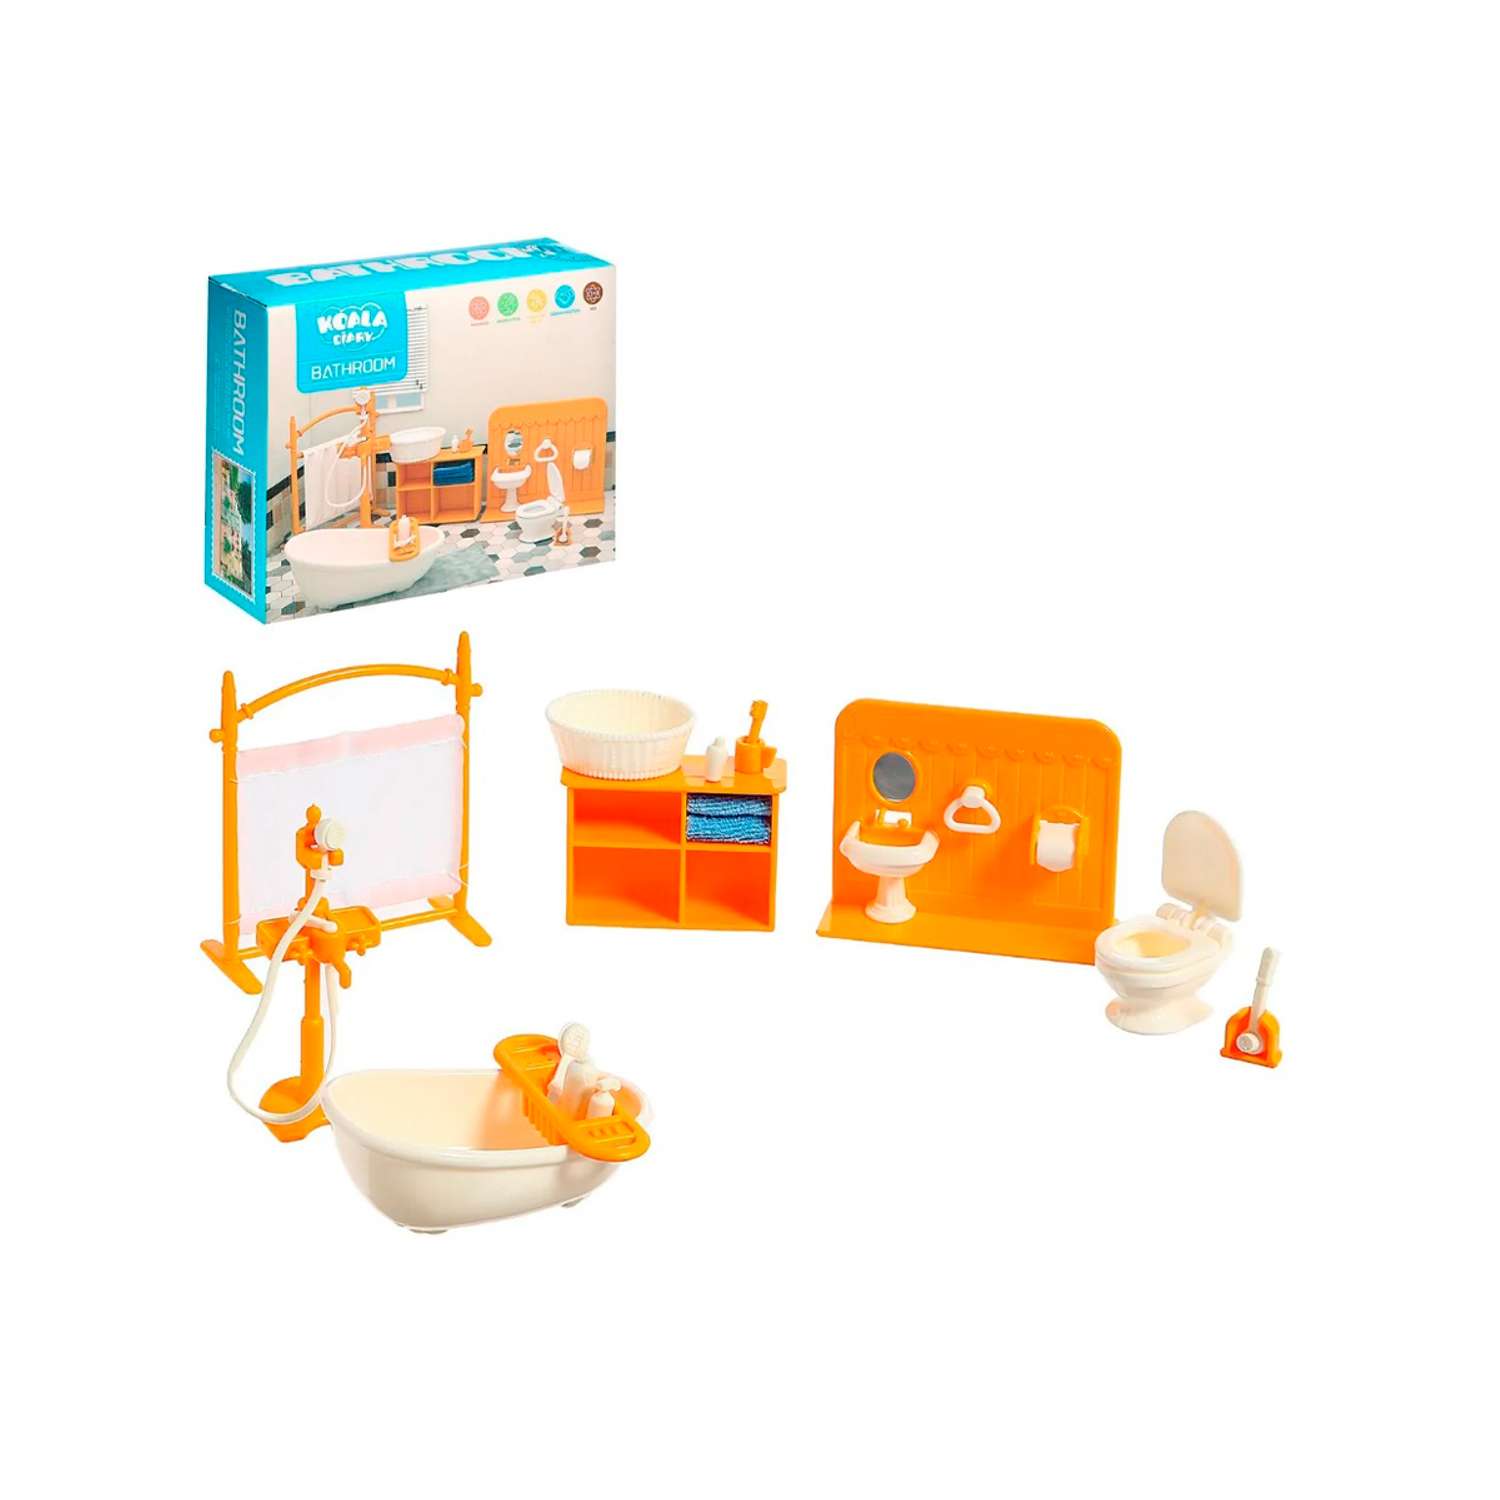 Игровой набор SHARKTOYS игрушечная мебель для куклы Ванная комната 1040000010 - фото 1